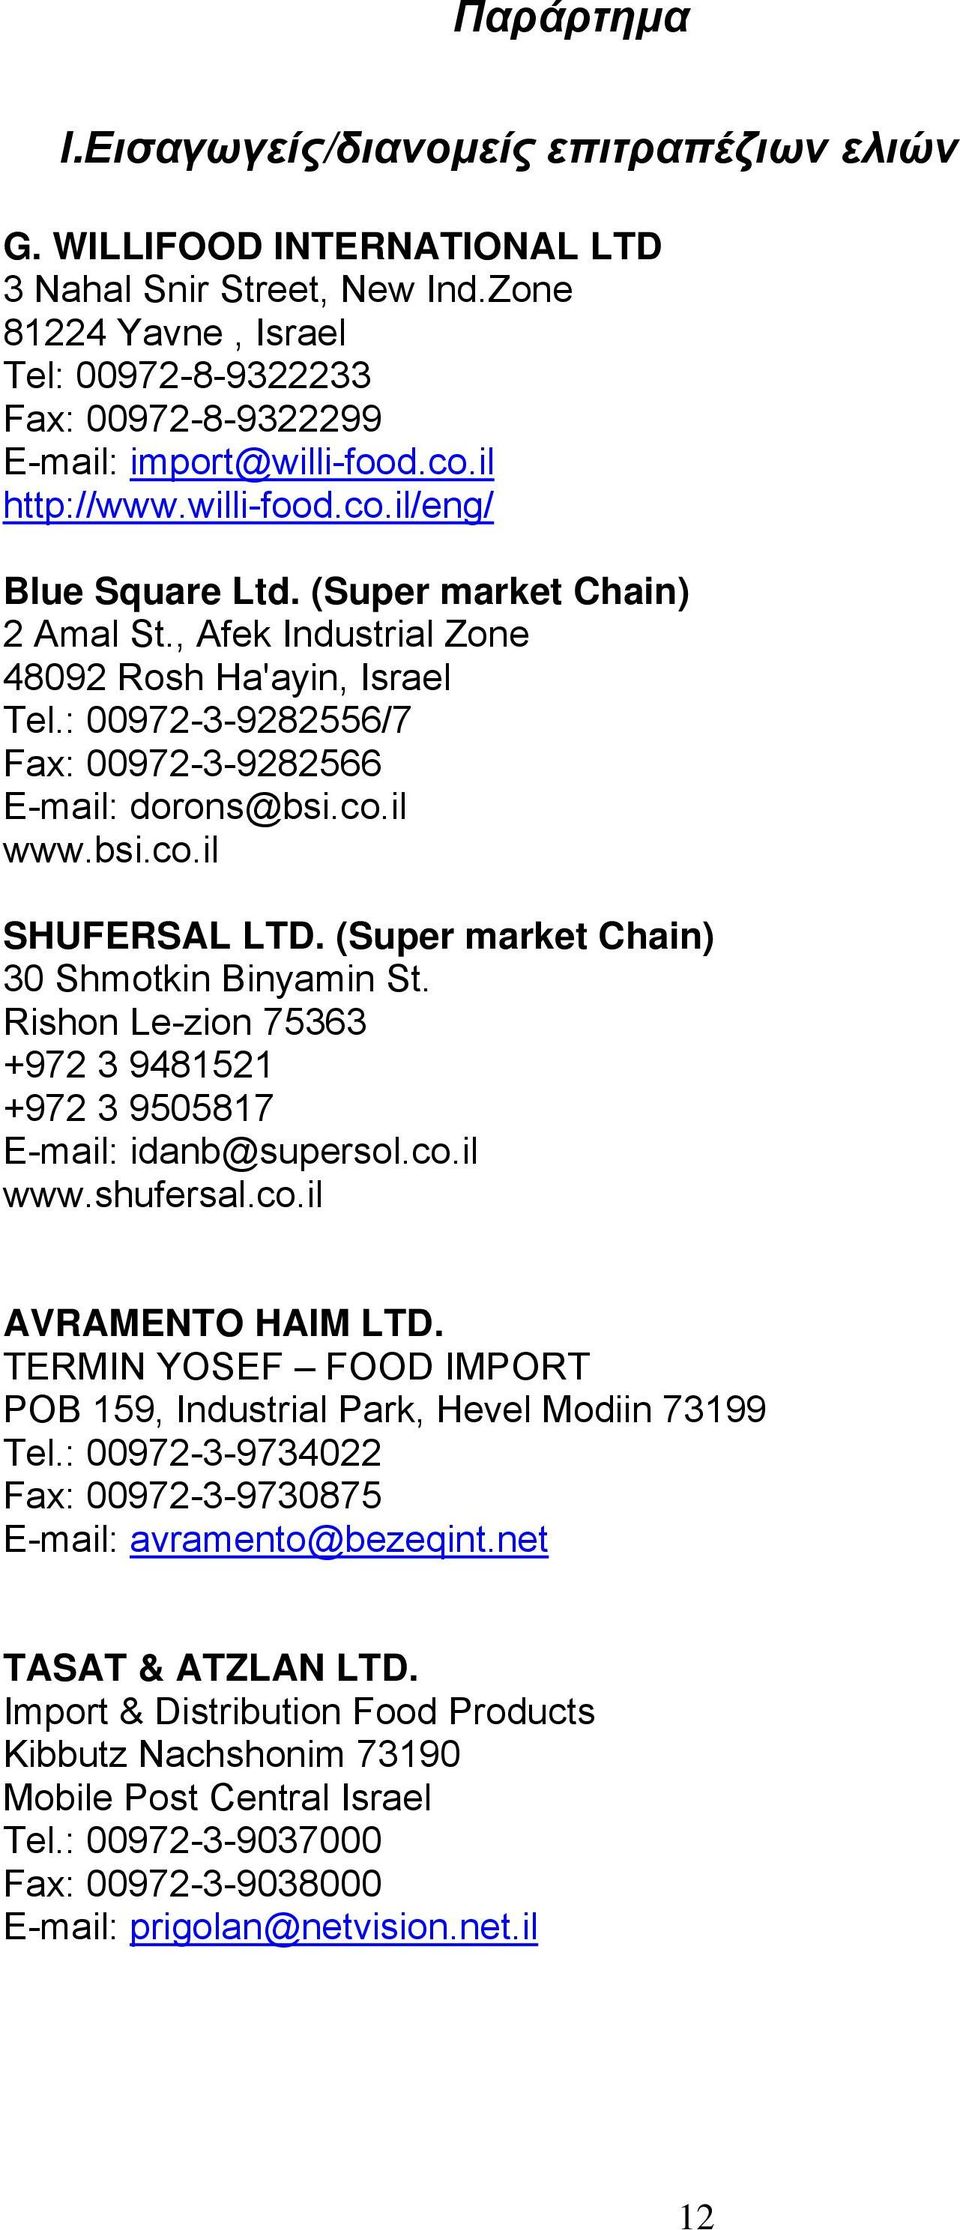 , Afek Industrial Zone 48092 Rosh Ha'ayin, Israel Tel.: 00972-3-9282556/7 Fax: 00972-3-9282566 E-mail: dorons@bsi.co.il www.bsi.co.il SHUFERSAL LTD. (Super market Chain) 30 Shmotkin Binyamin St.